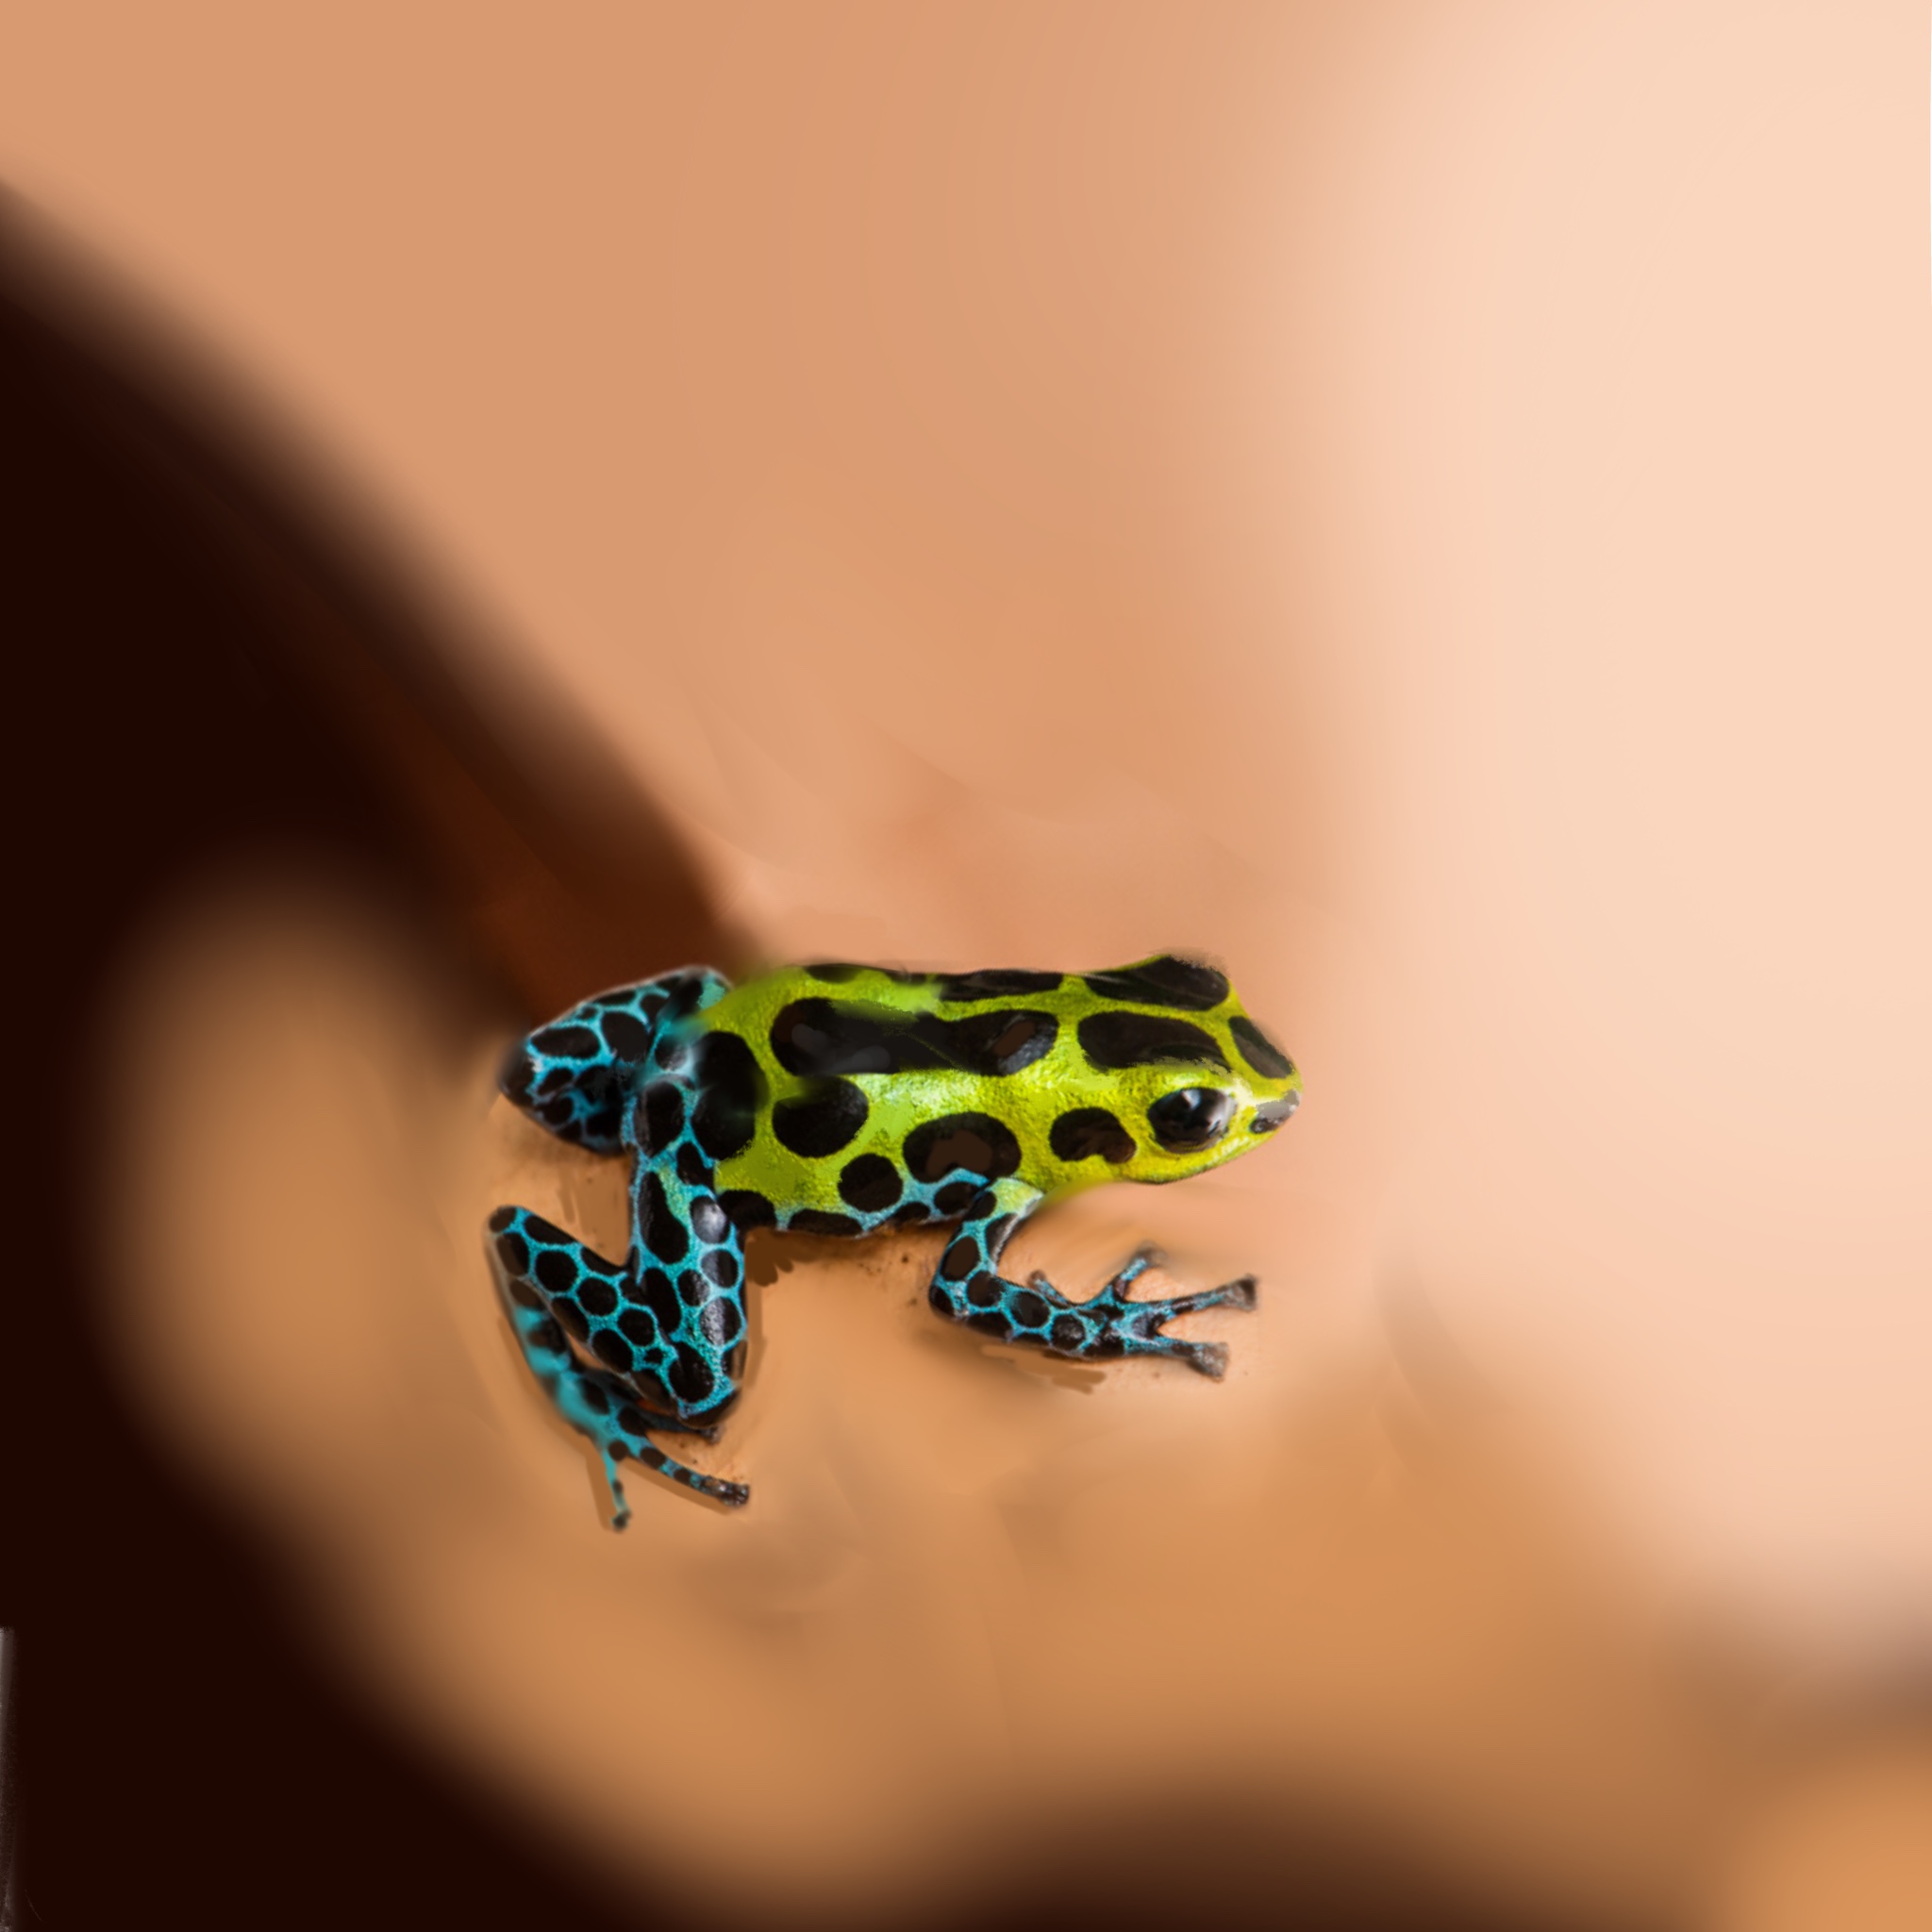 Poison Dart Frog